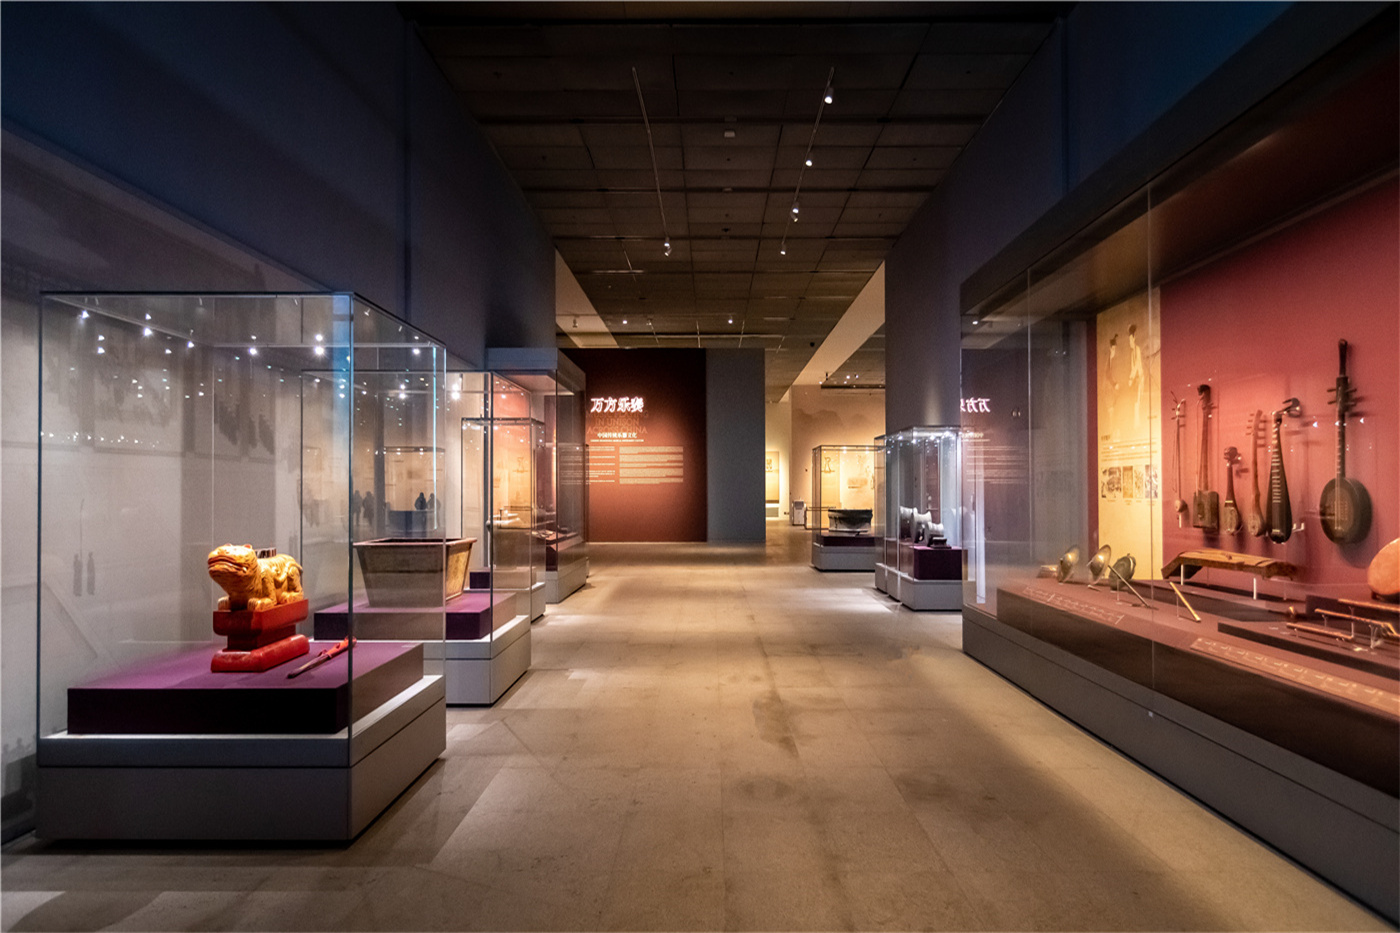 中华瑰宝——中国非物质文化遗产和工艺美术展